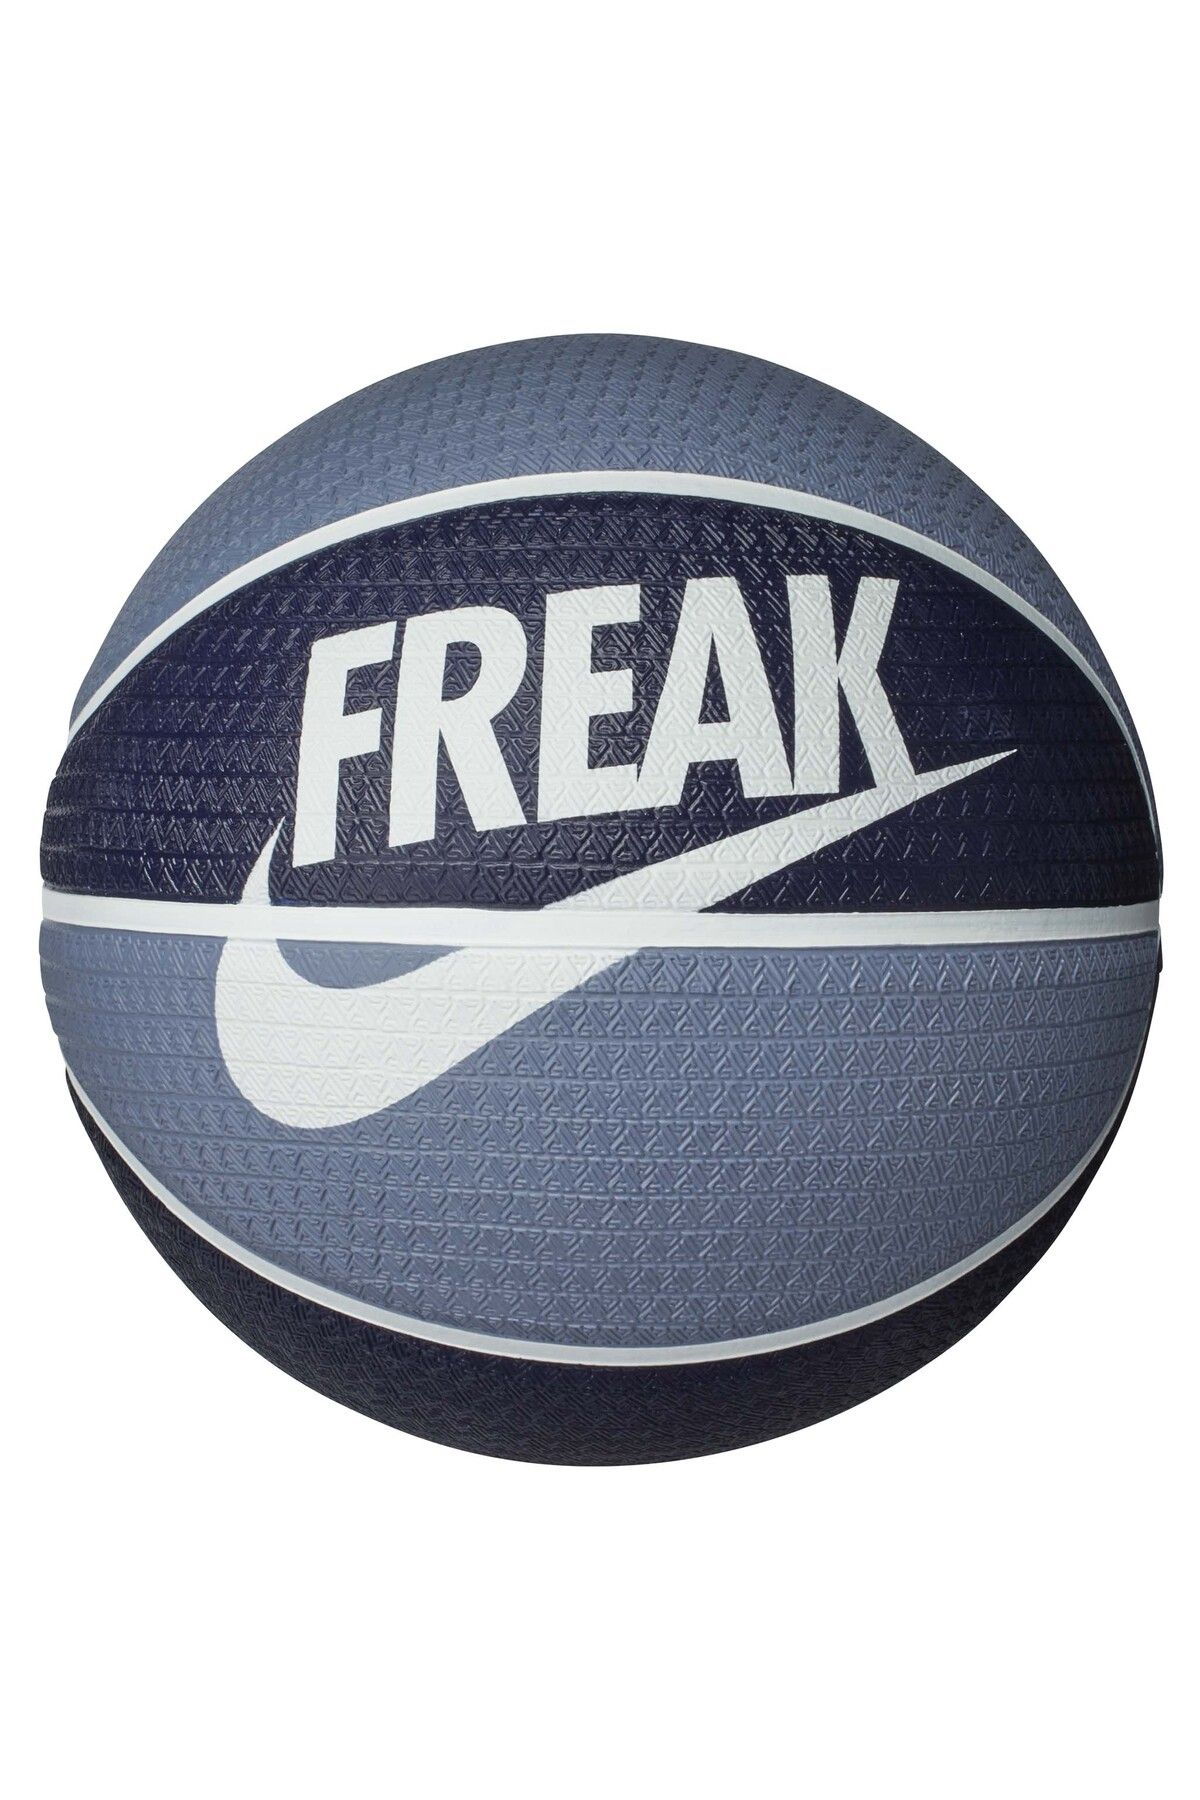 Nike Playground Giannis Antetokounmpo Basketbol Topu